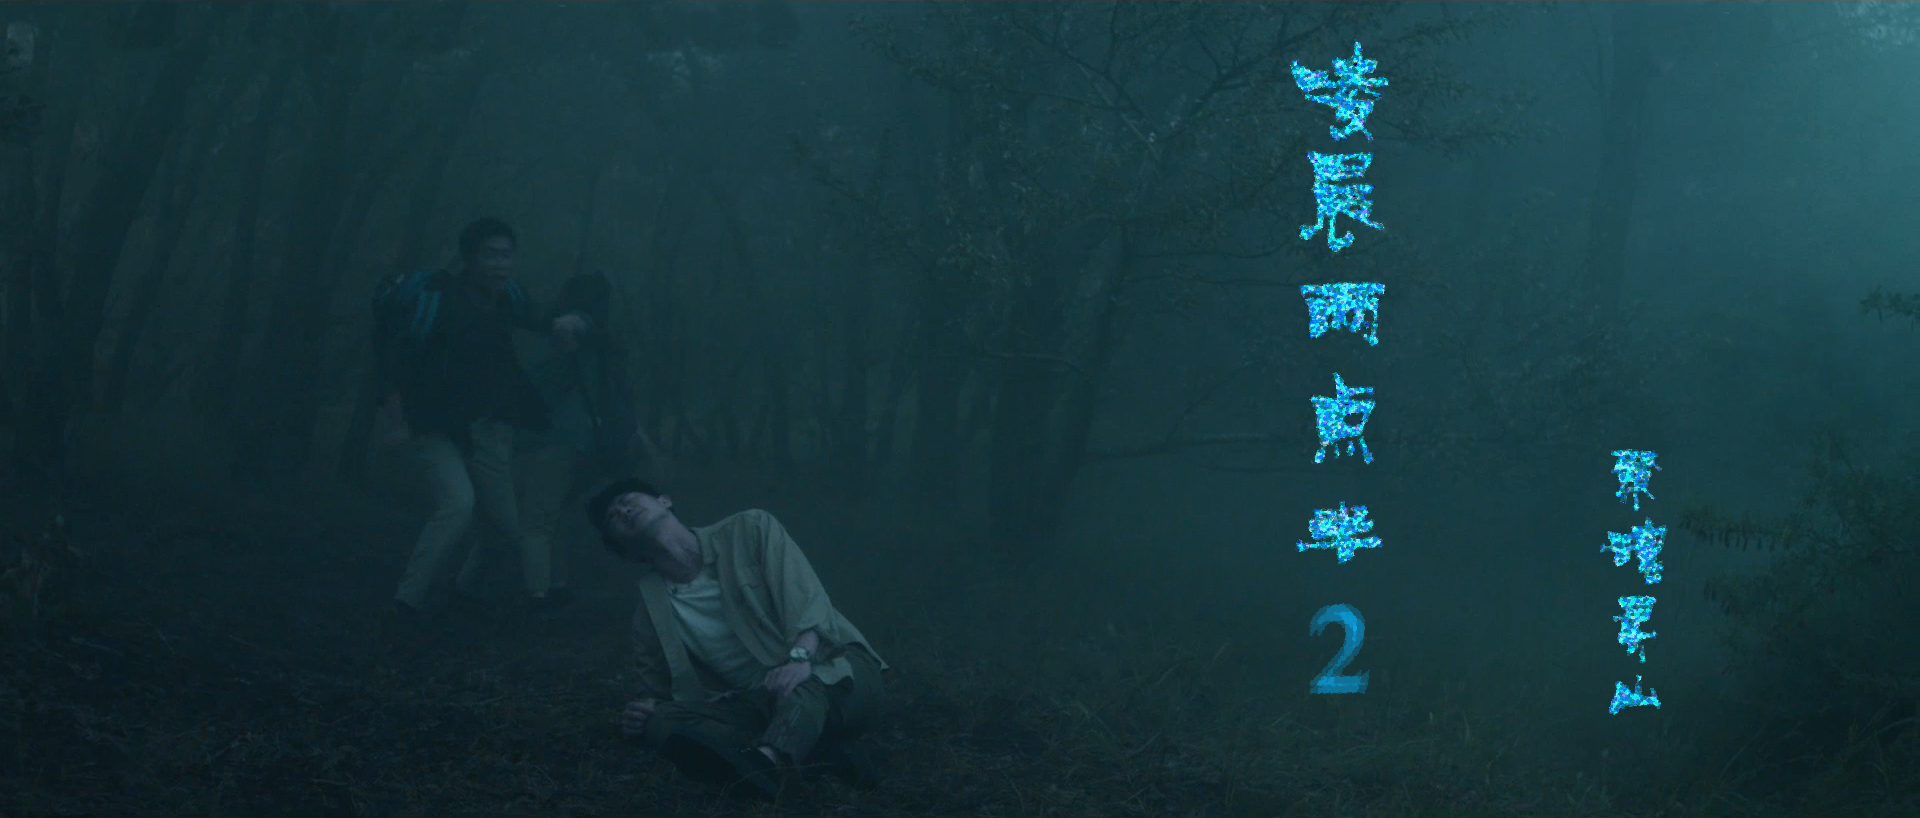 电影《凌晨两点半2》定档5月20日 聚焦午夜惊悚 - 前沿资讯-CaiYaWang